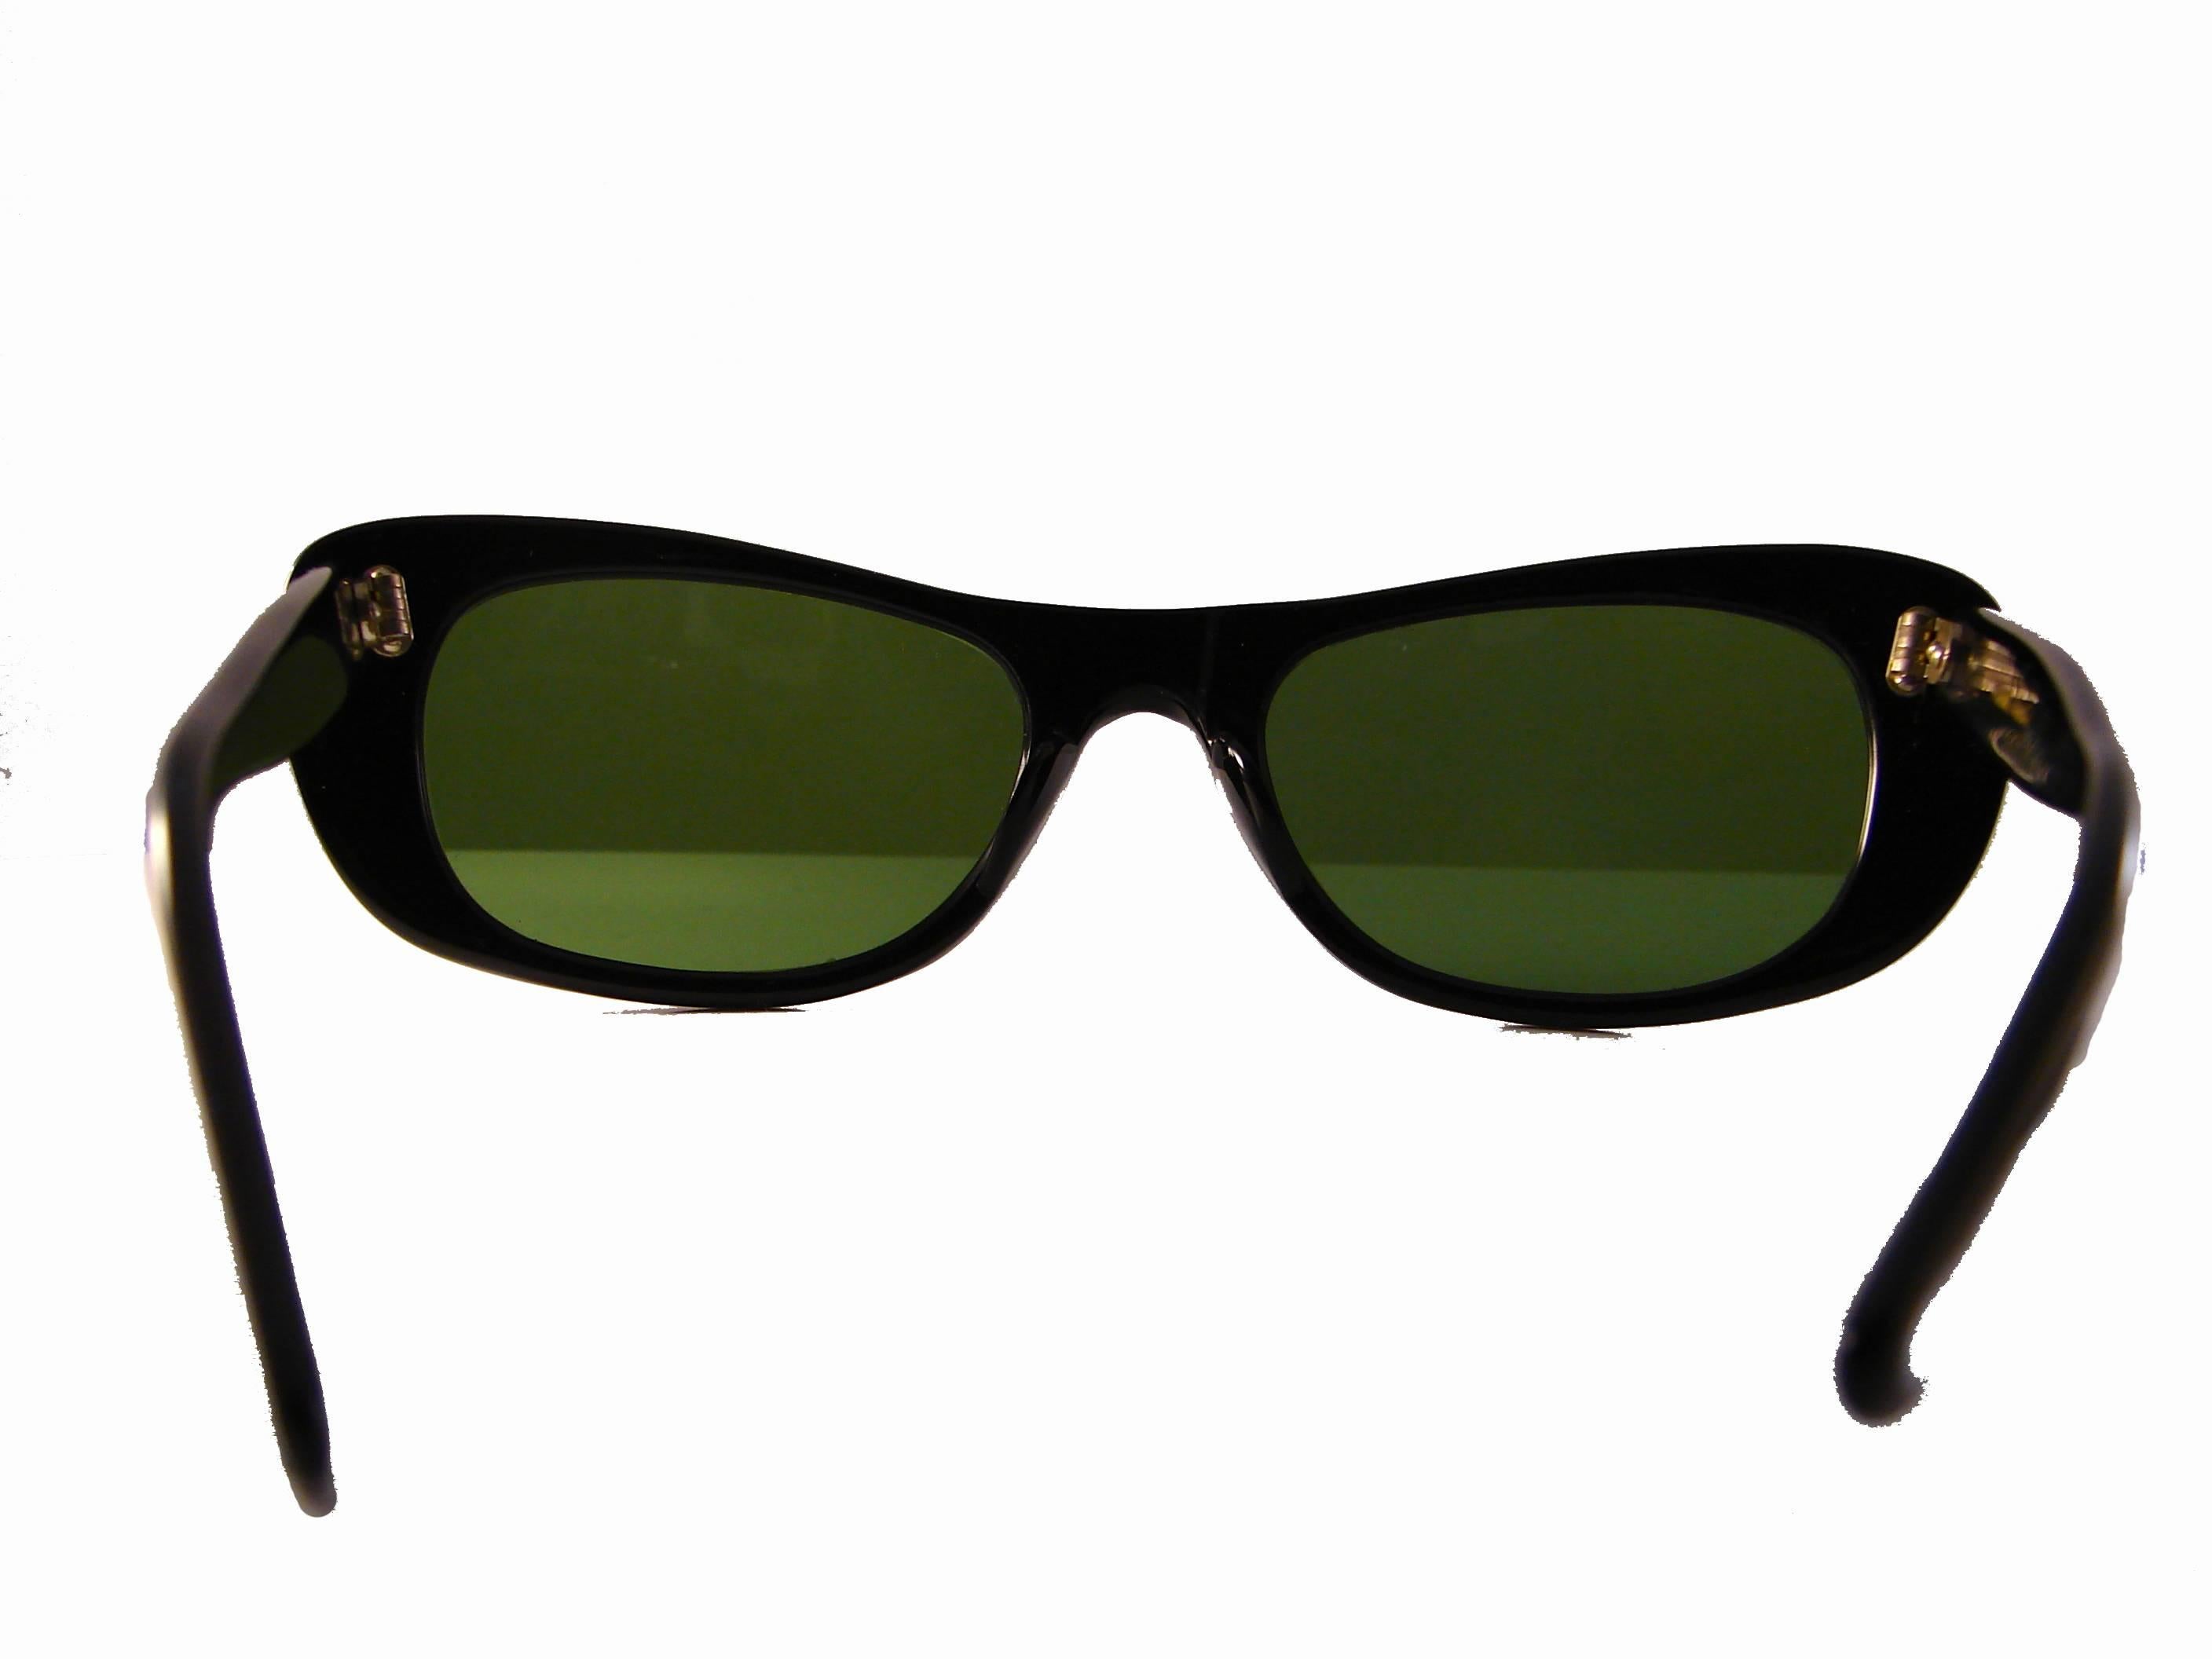 Paulette Guinet Black Sunglasses Mod Rare Made in France Dead Stock 1960s  2